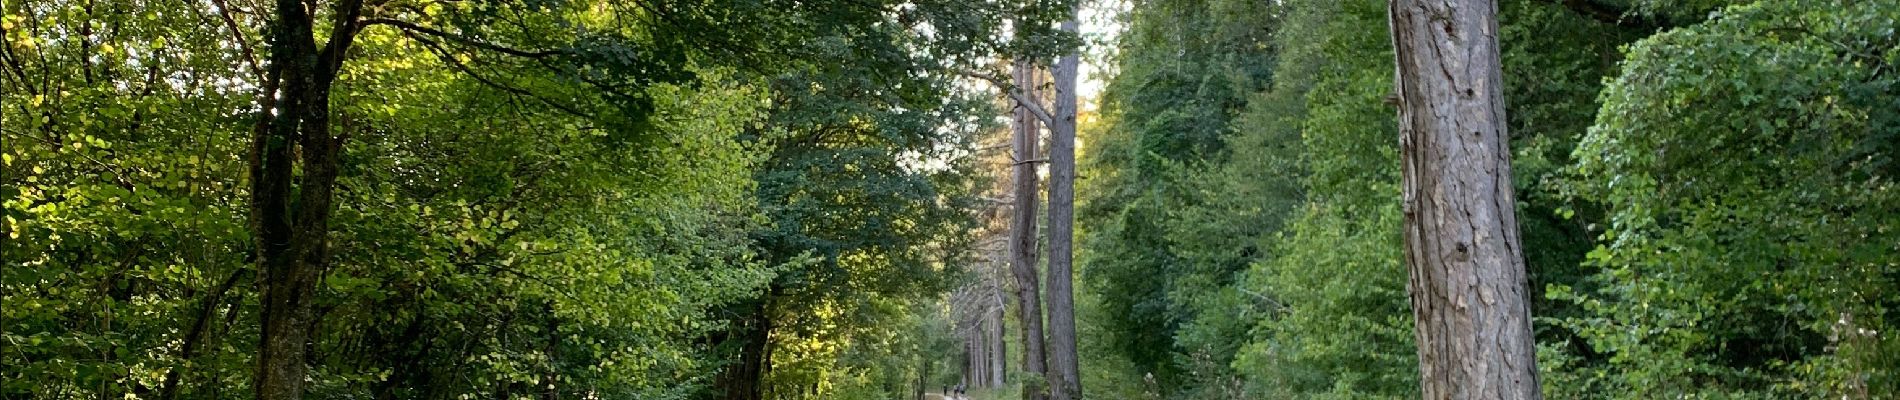 Randonnée Marche Saint-Mihiel - St Mihiel - forêt domaniale de Gaumont - Photo